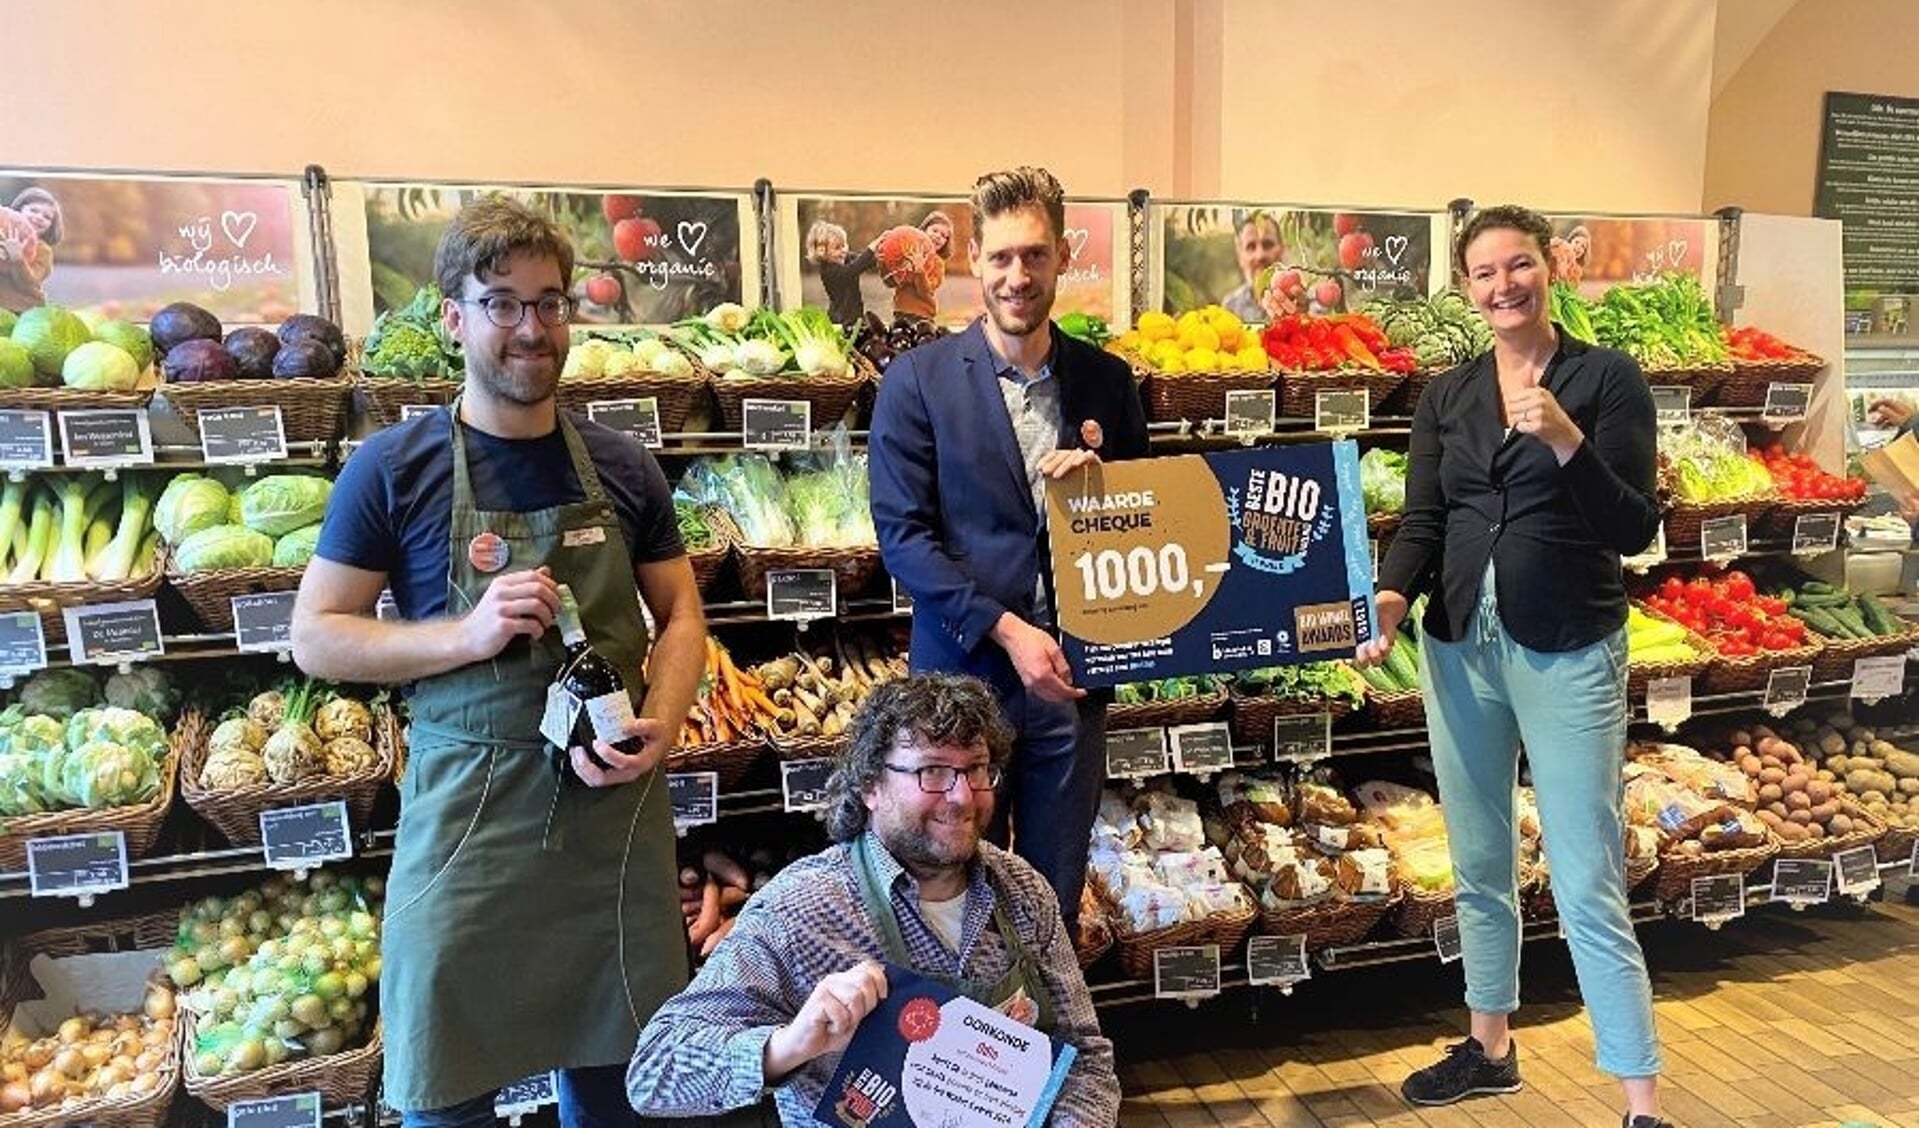 Daniël Opdam, bedrijfsleider van de biologische Odin winkel in Zutphen, en zijn team ontvangen 1.000 euro, een workshop en een lokaal promotiepakket van Roosmarijn Saat van de Biowinkelvereniging. Foto: PR